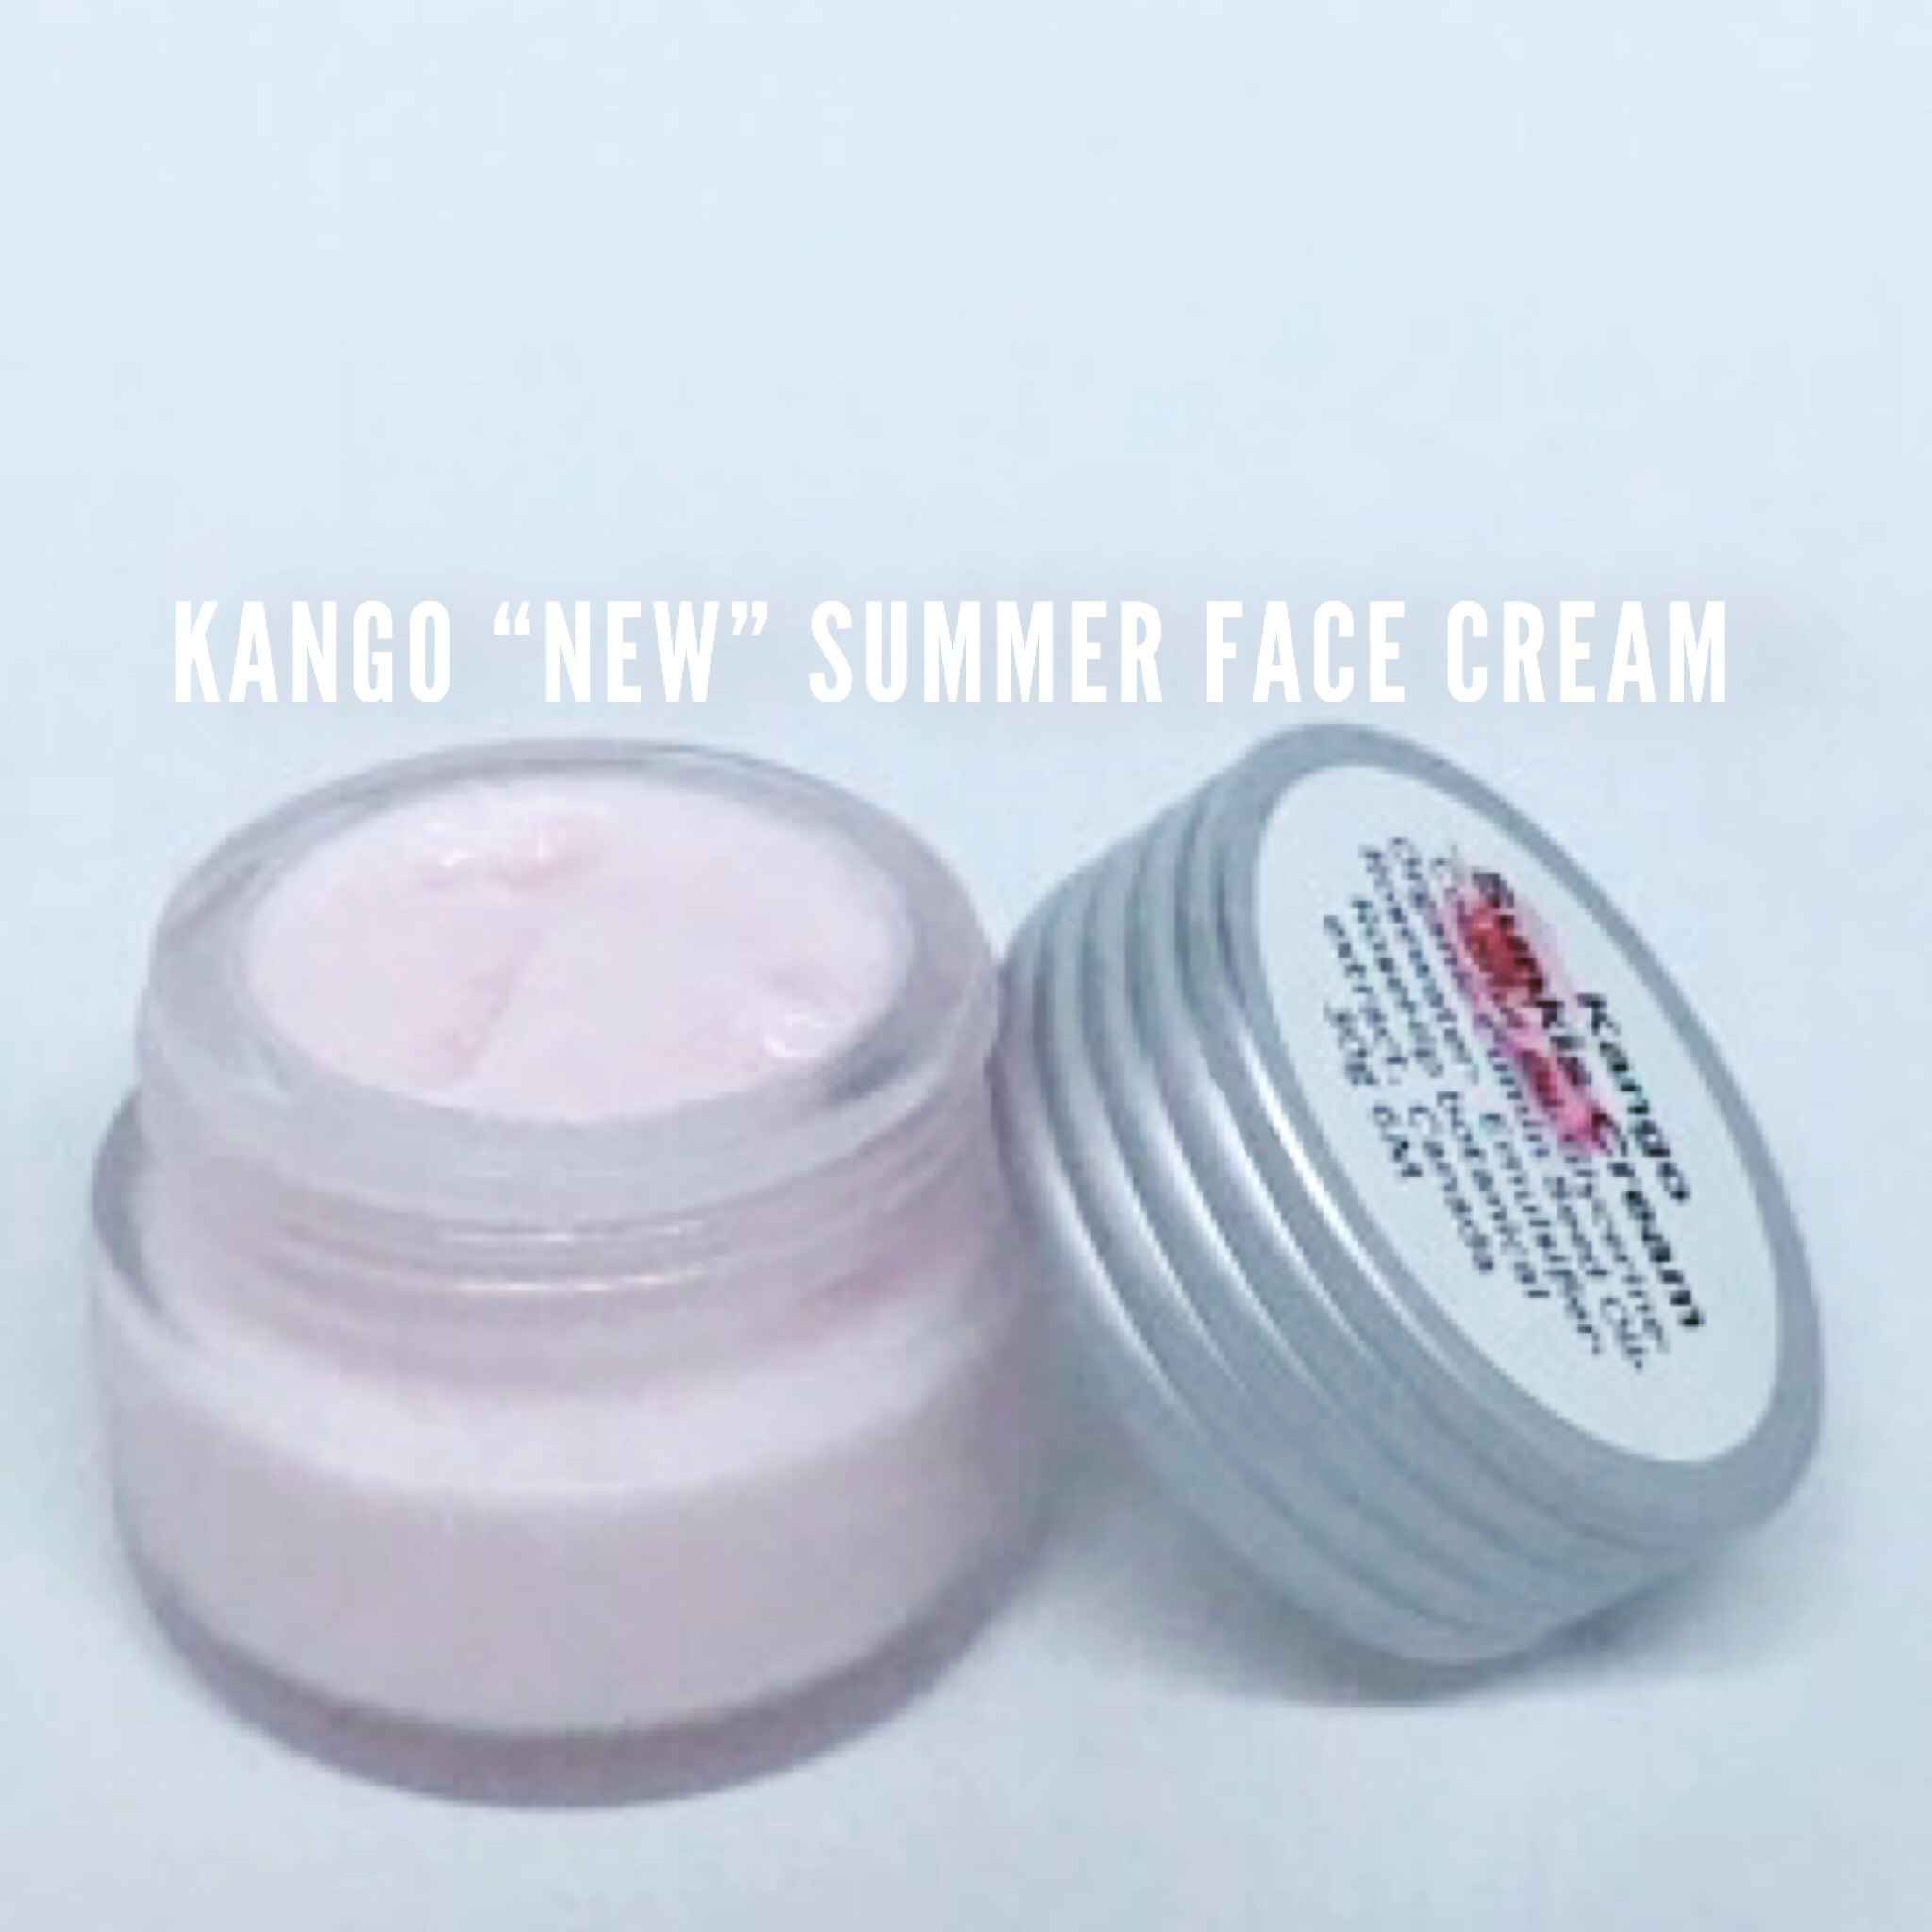 Kango - Sunkis Summer Face Cream